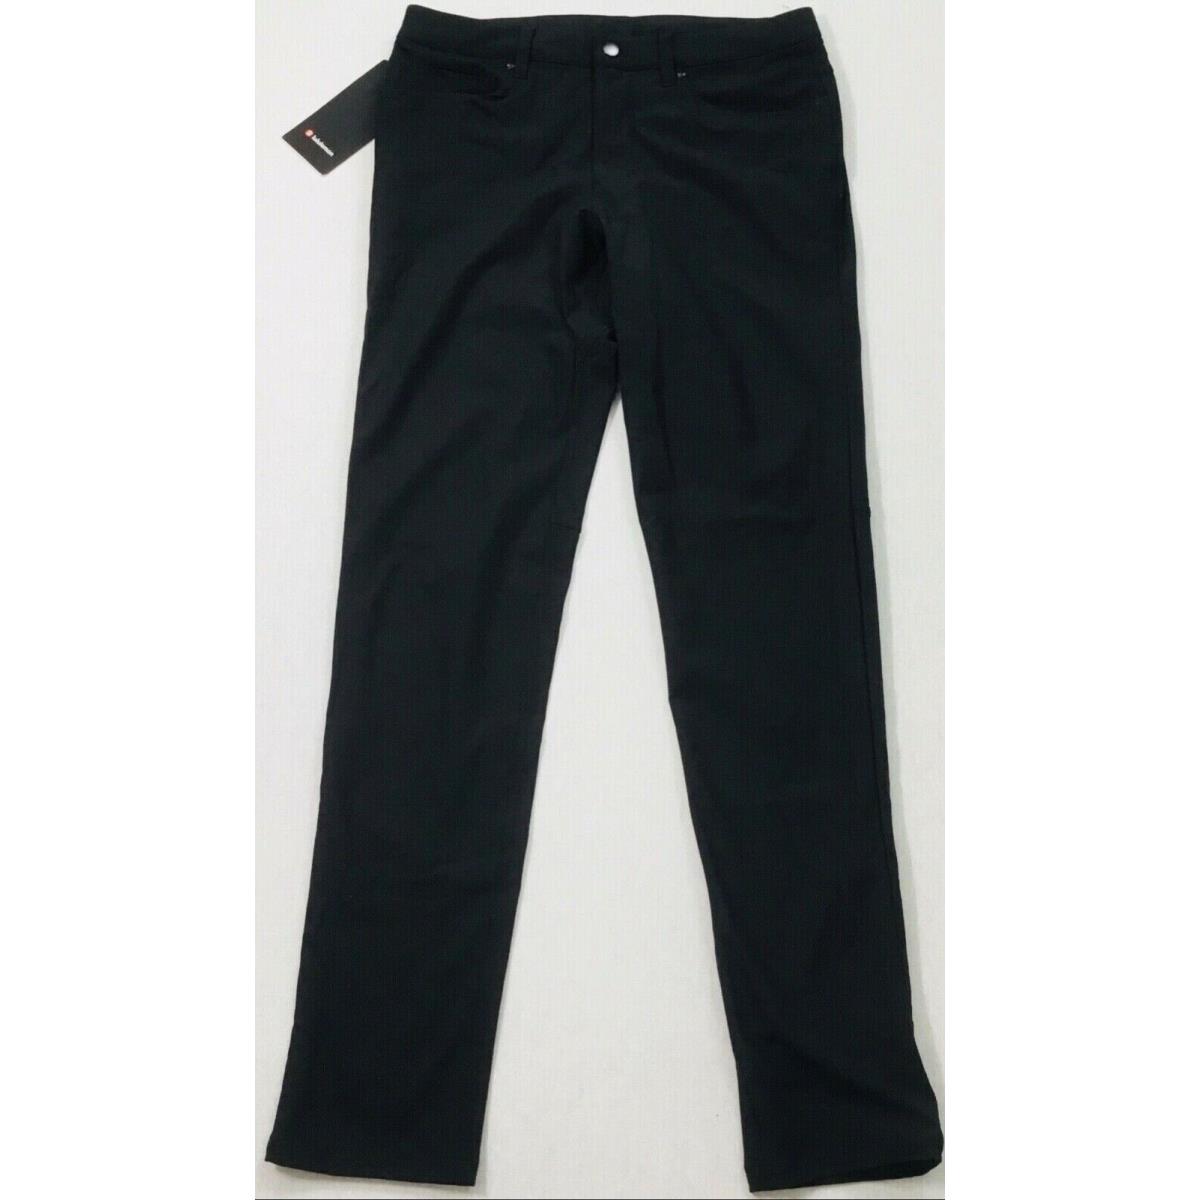 Lululemon Men s Abc Pant Slim 34 Length Blk Black LM5552S Size 34